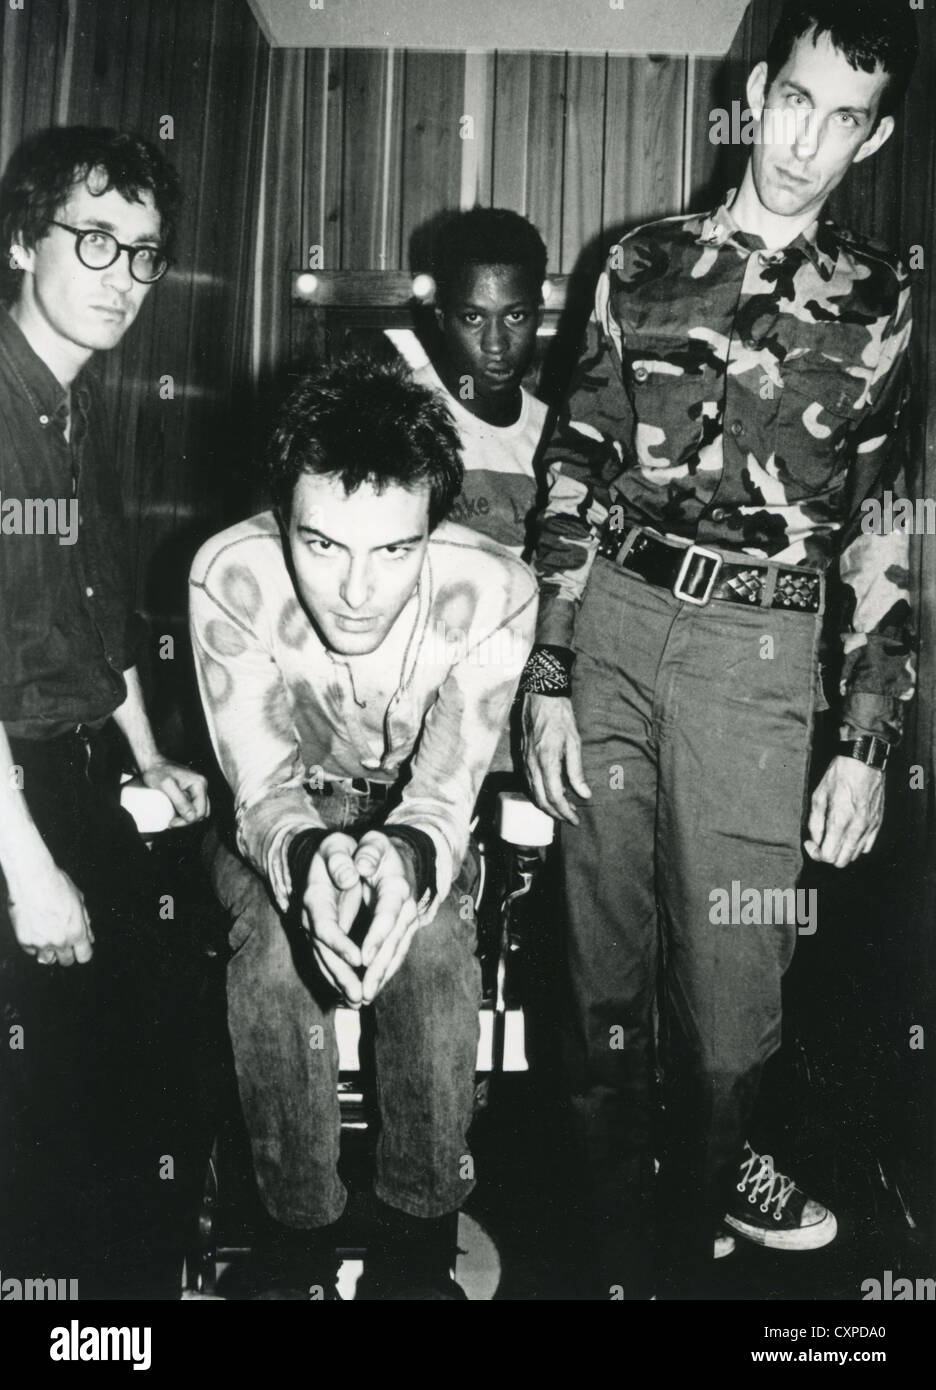 DEAD KENNEDYS foto promozionale di noi gruppo punk circa 1980. Da sinistra: Klaus di fluoruro, Jello Biafra, D.H. Peligro, East Bay Ra Foto Stock